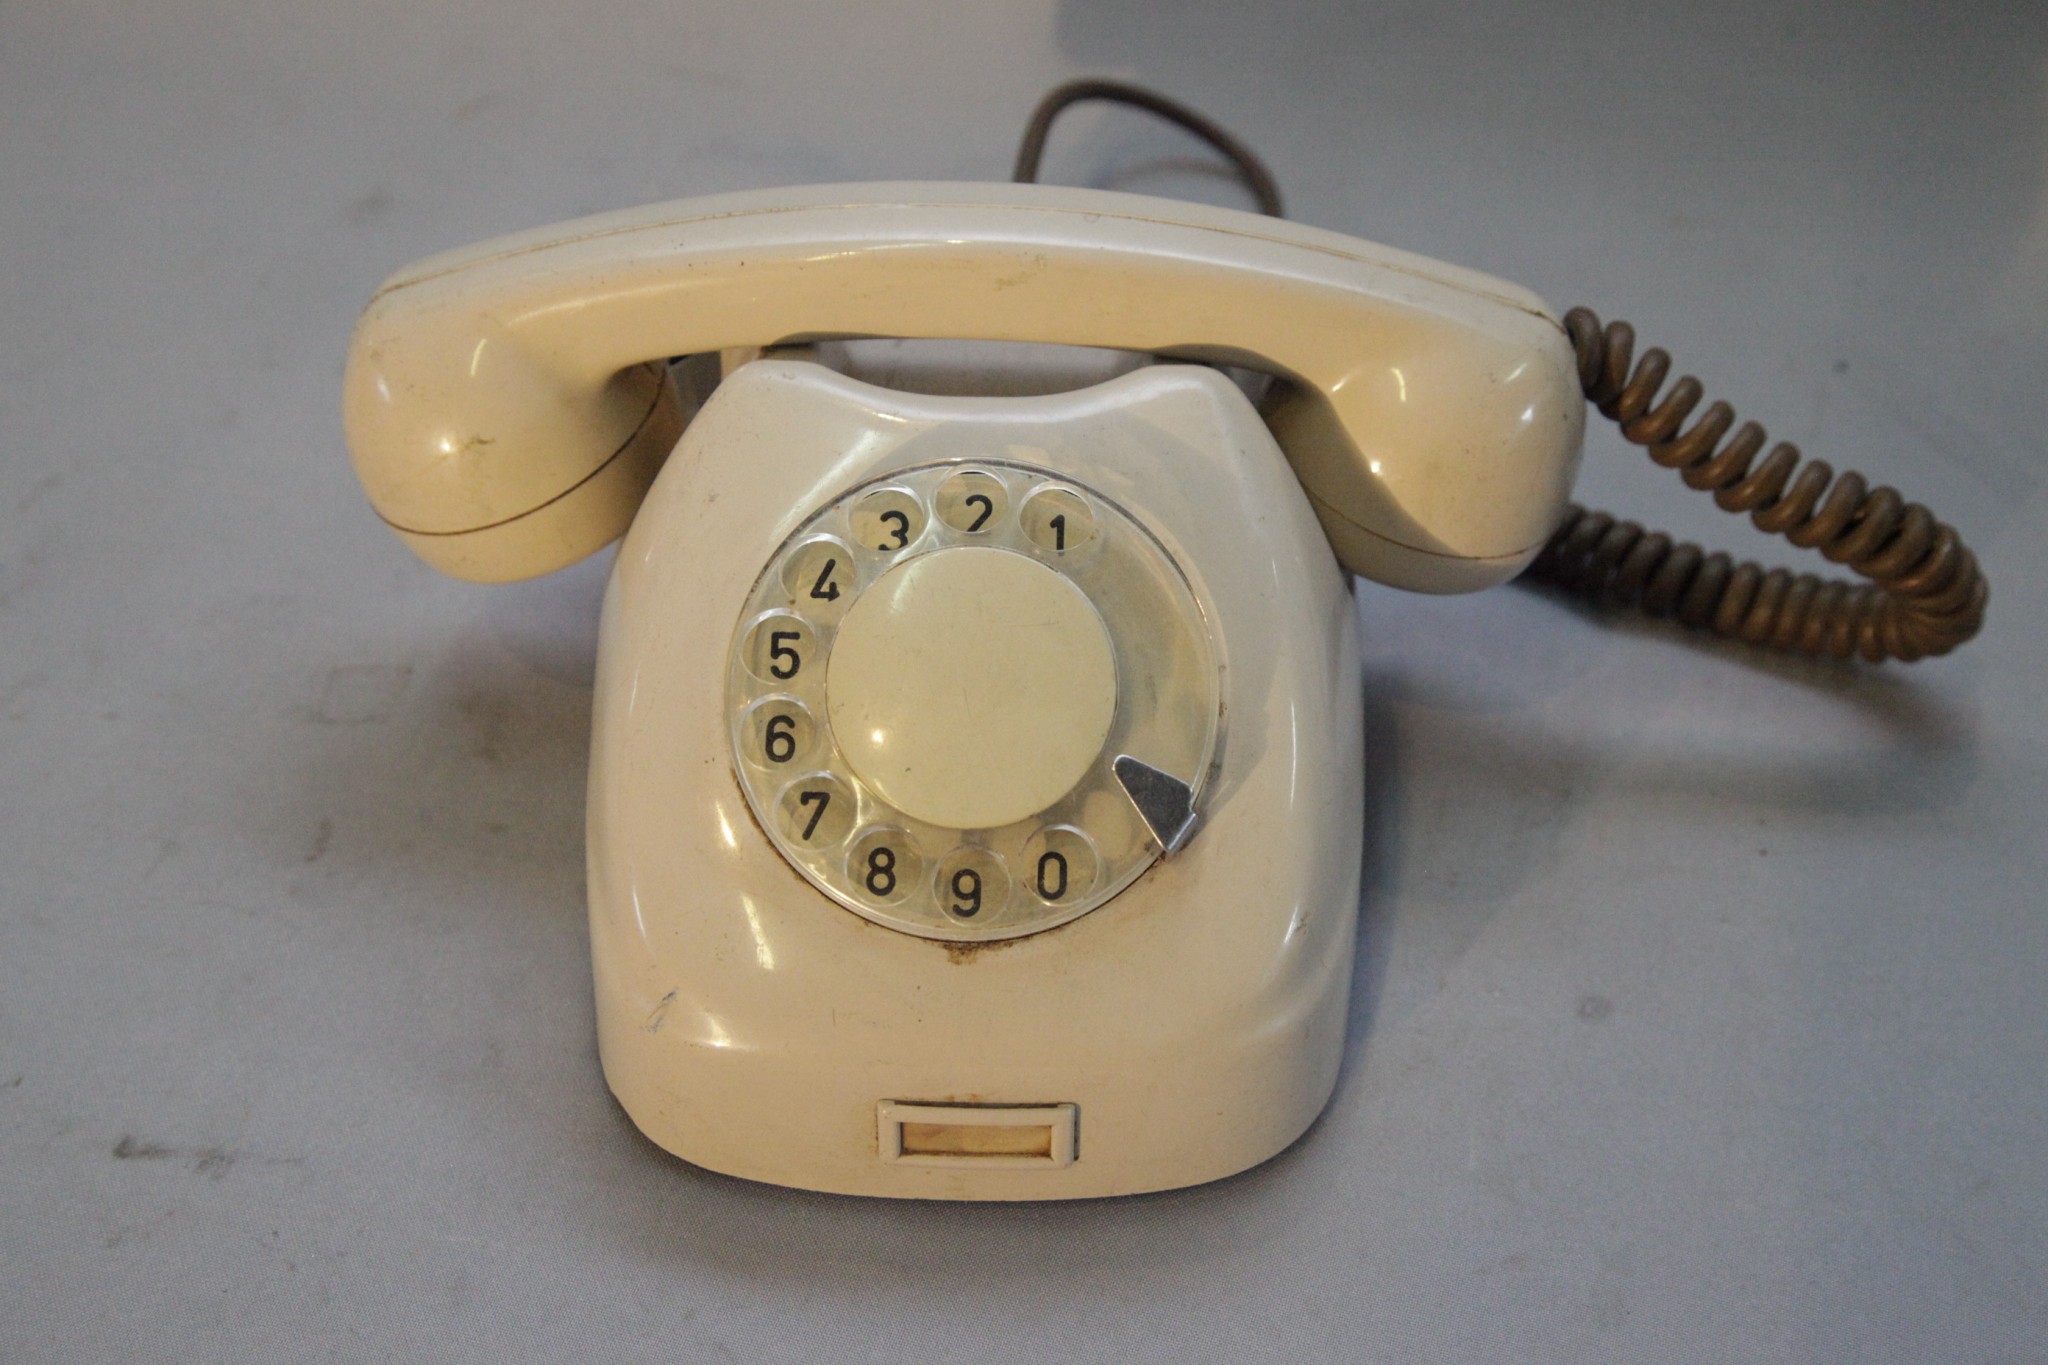 Купить советский телефон. Телефонный аппарат спектр та-1146. Телефонный аппарат Aster 70. Тан-70-1. Советский телефонный аппарат с дисковым номеронабирателем.